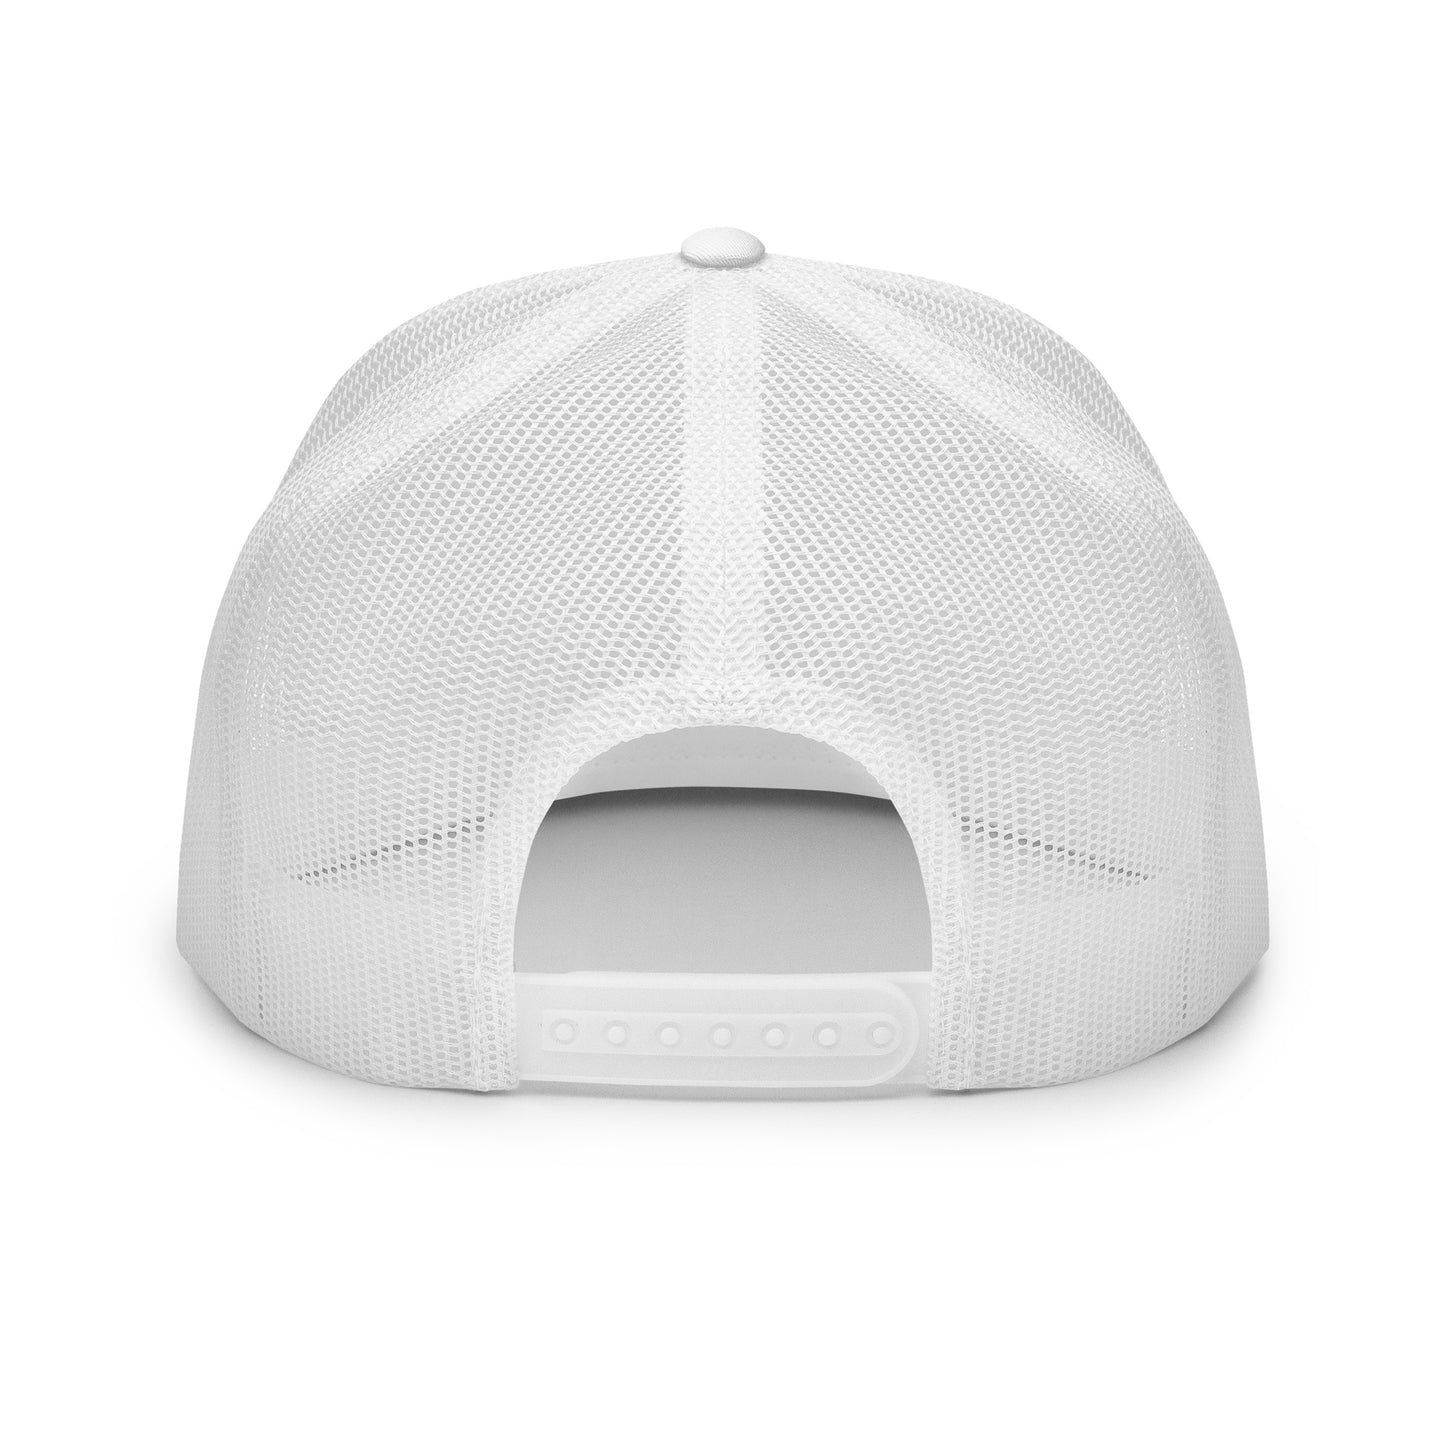 Skwok Brand / Hat / Trucker Cap / OG Logo / 3D Puff / White / Black